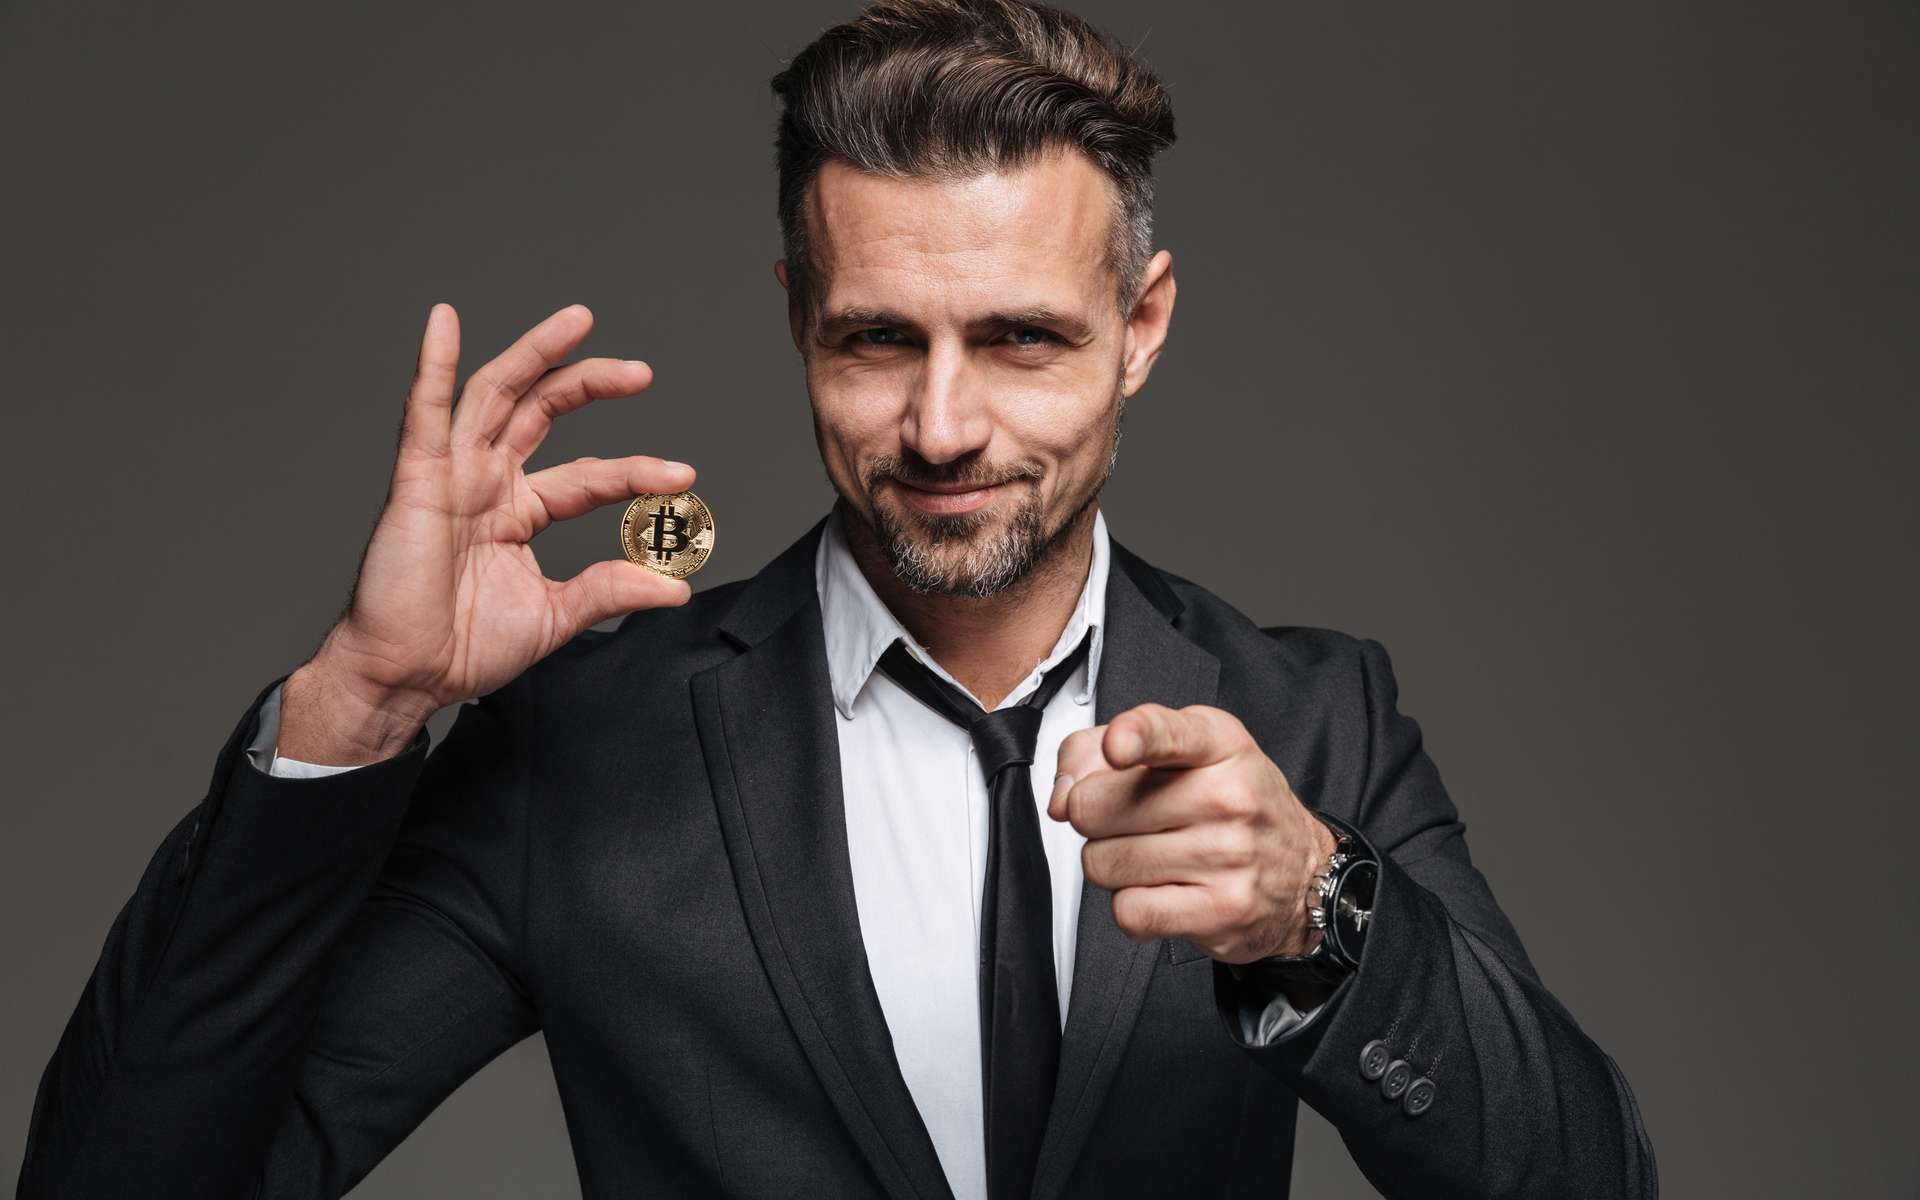 L'image d'un entrepreneur en costume et cravate qui tient un Bitcoin dans la main. © Drobot Dean